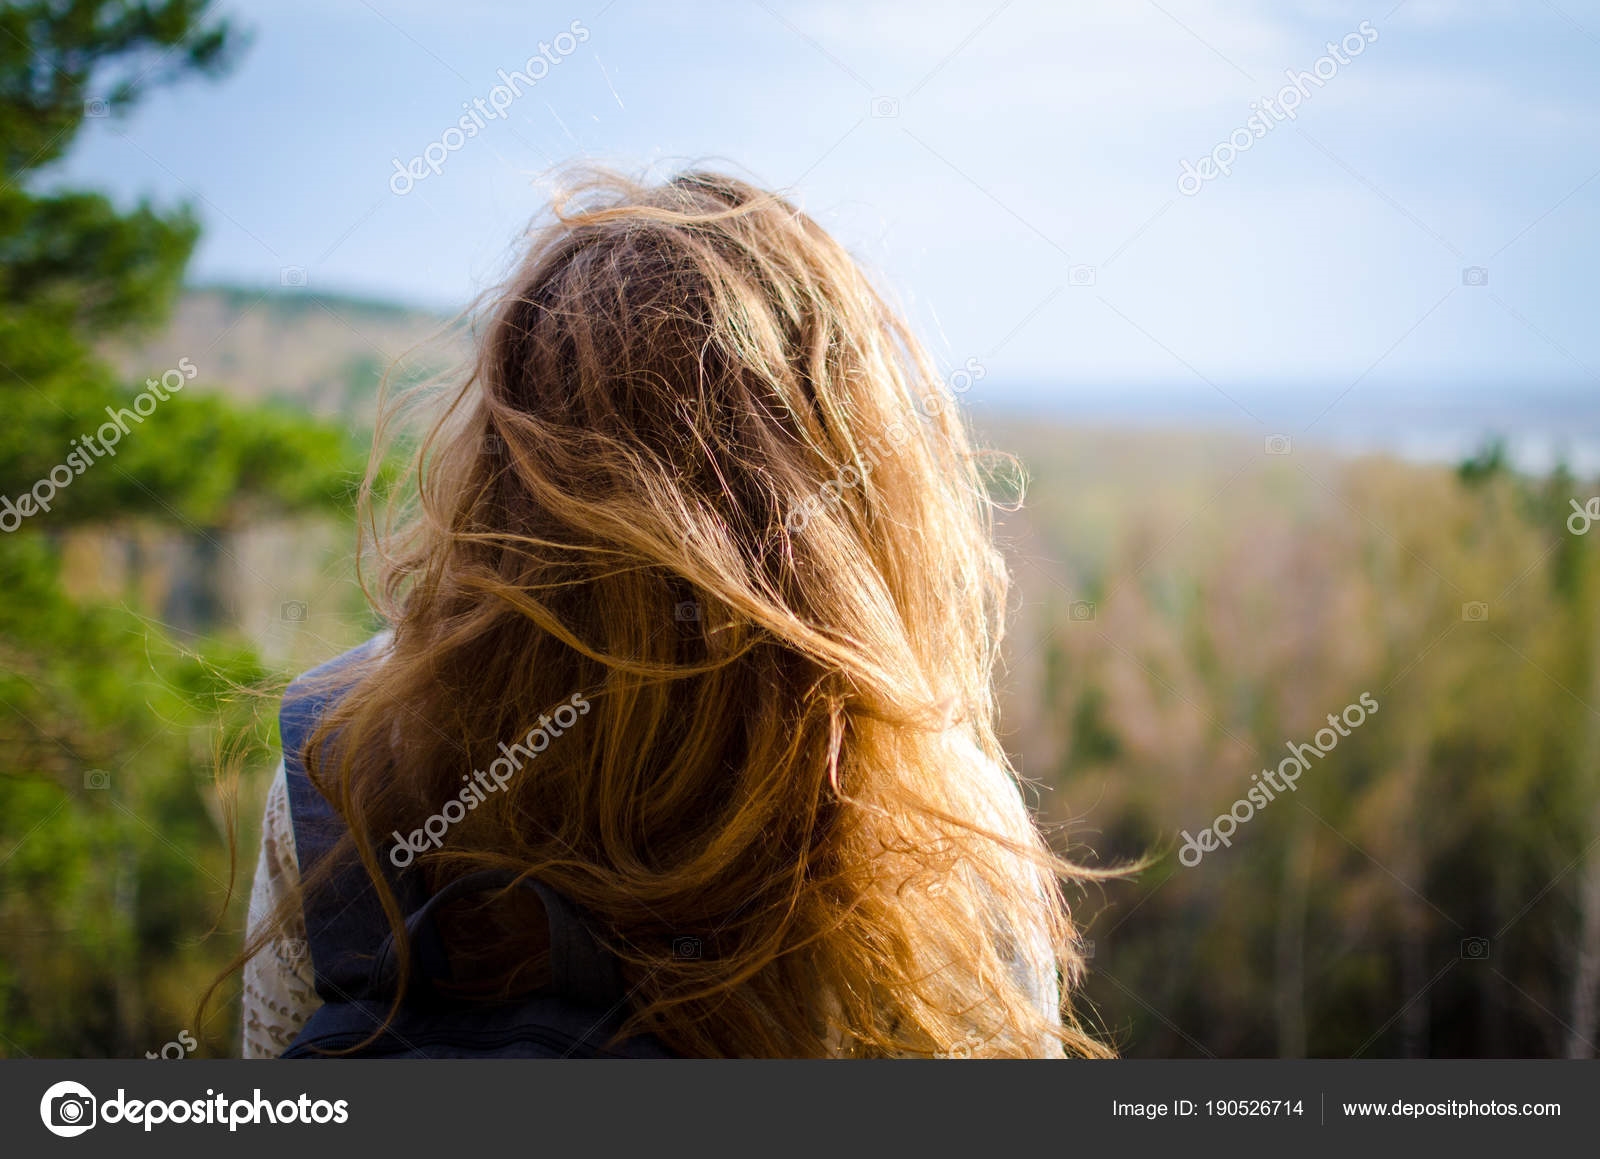 Фото девушек в лесу летом со спины   подборка (6)